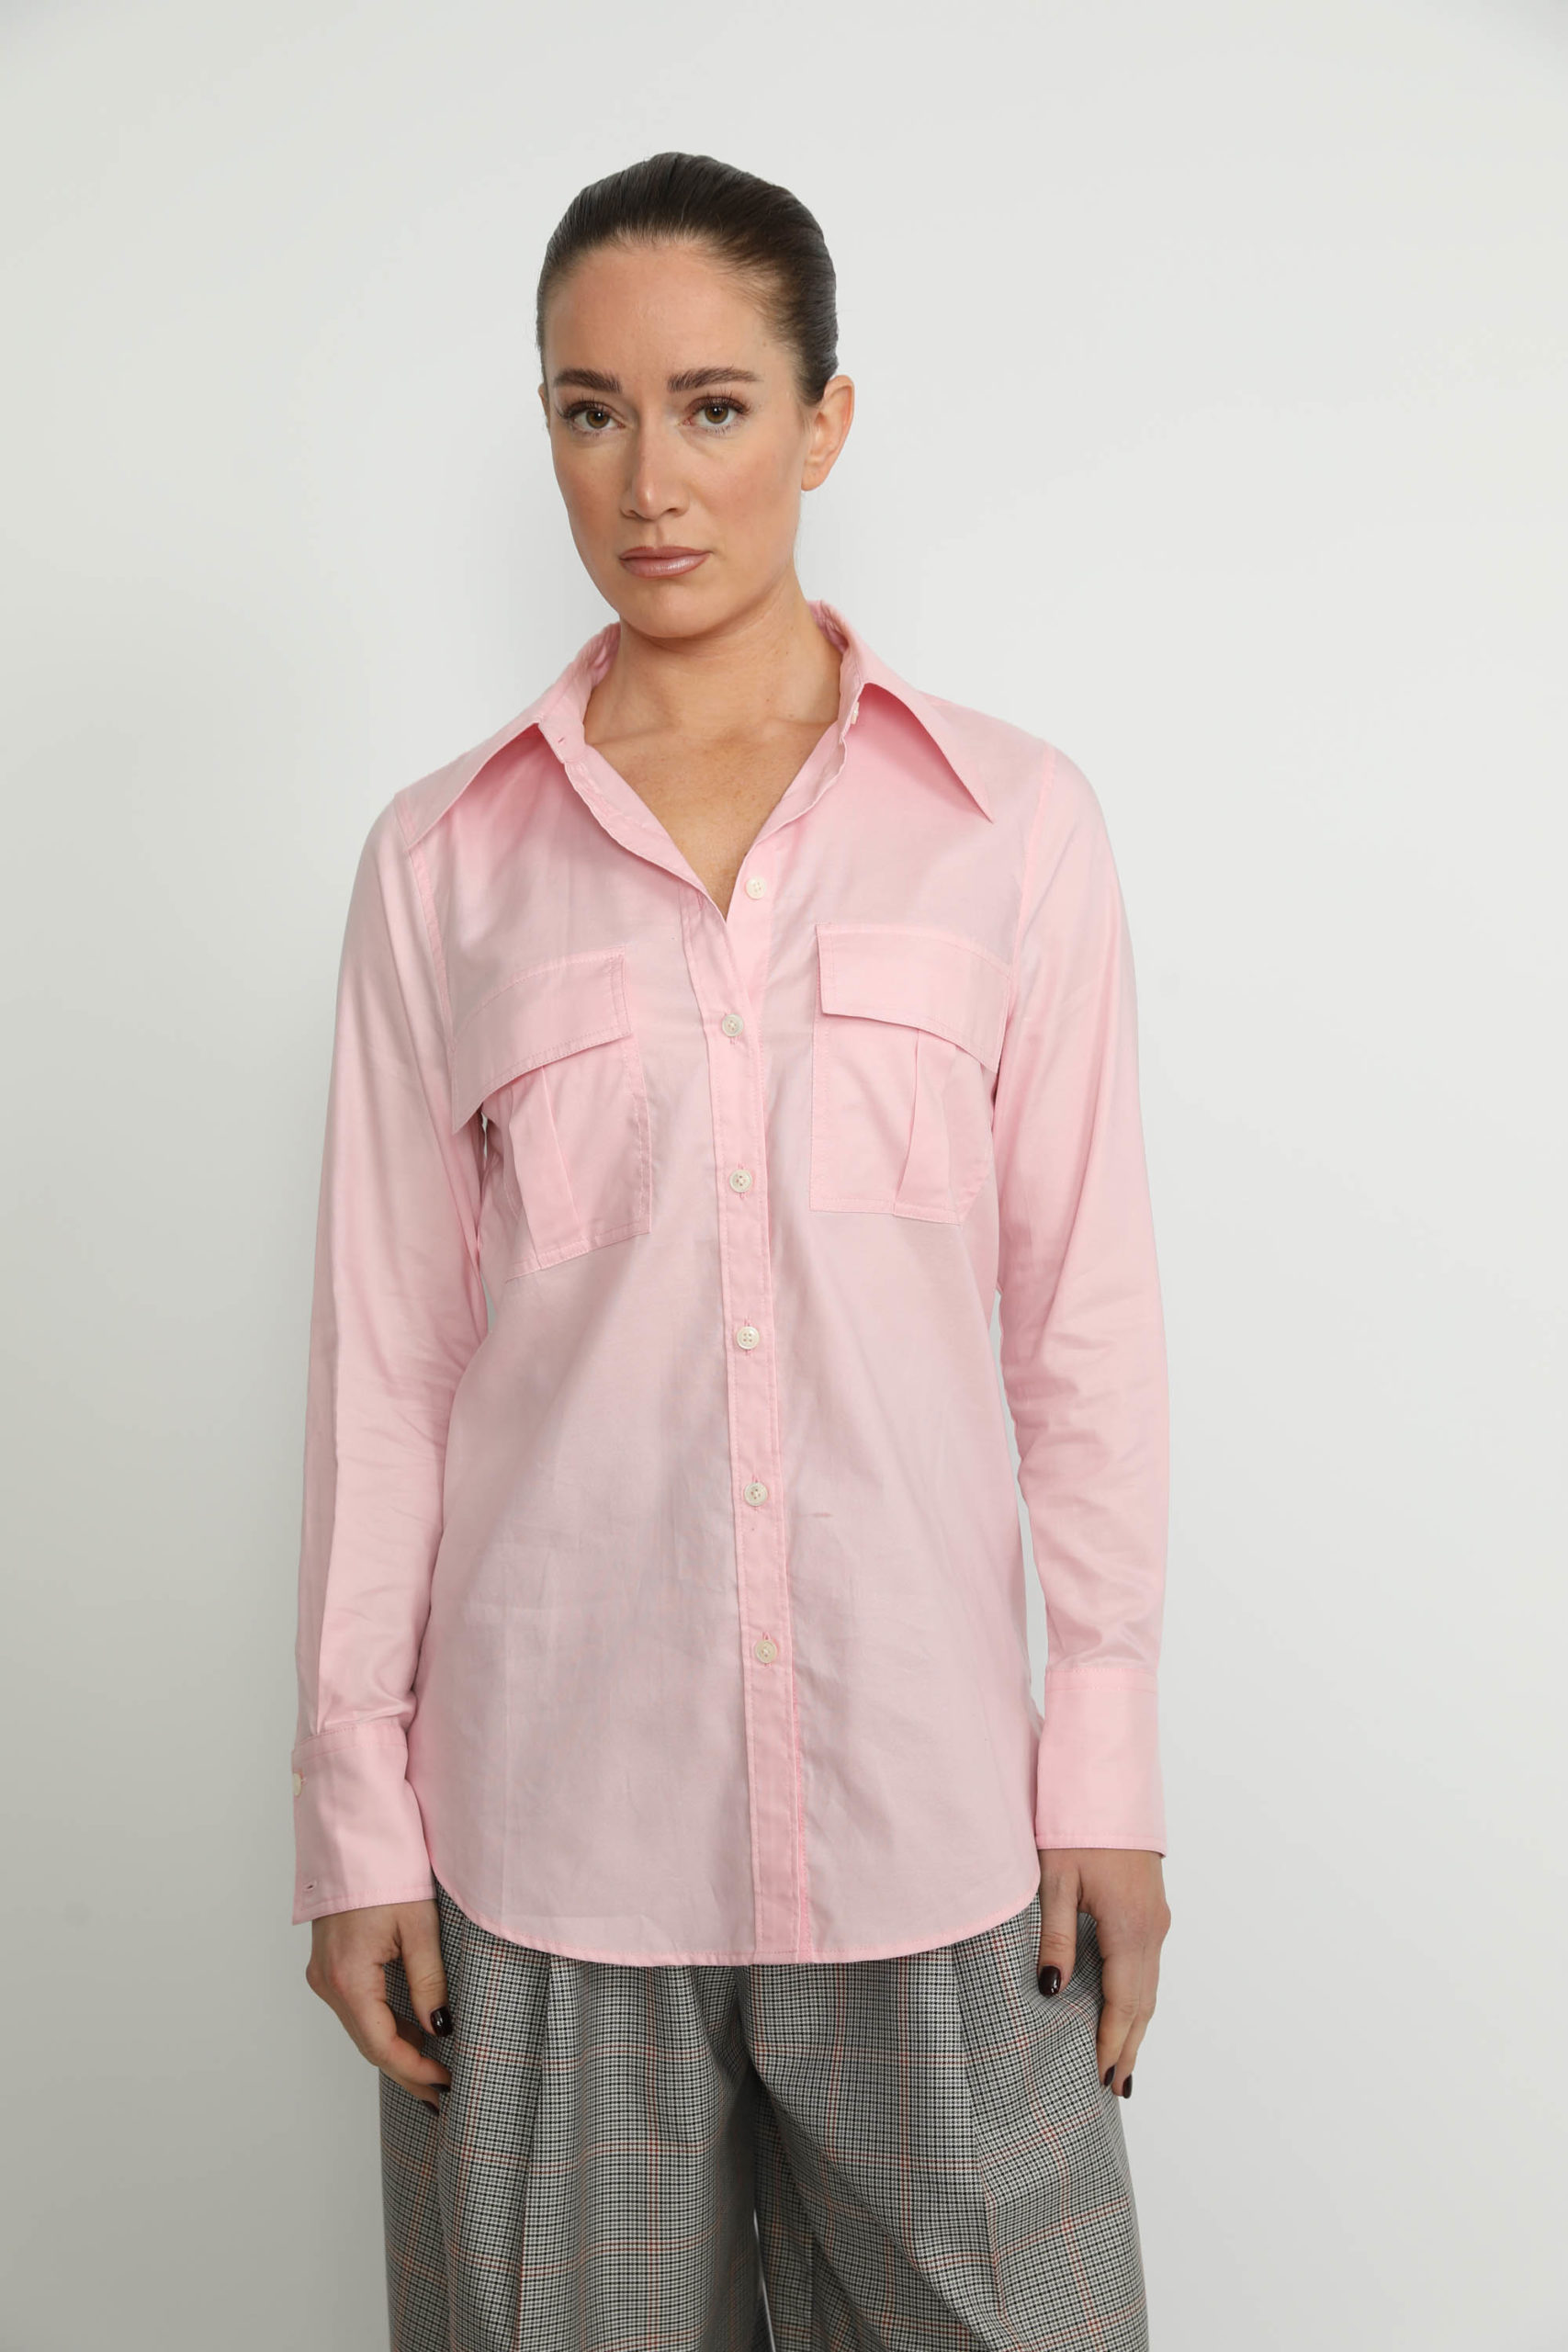 Metz Shirt – Metz Pink Shirt